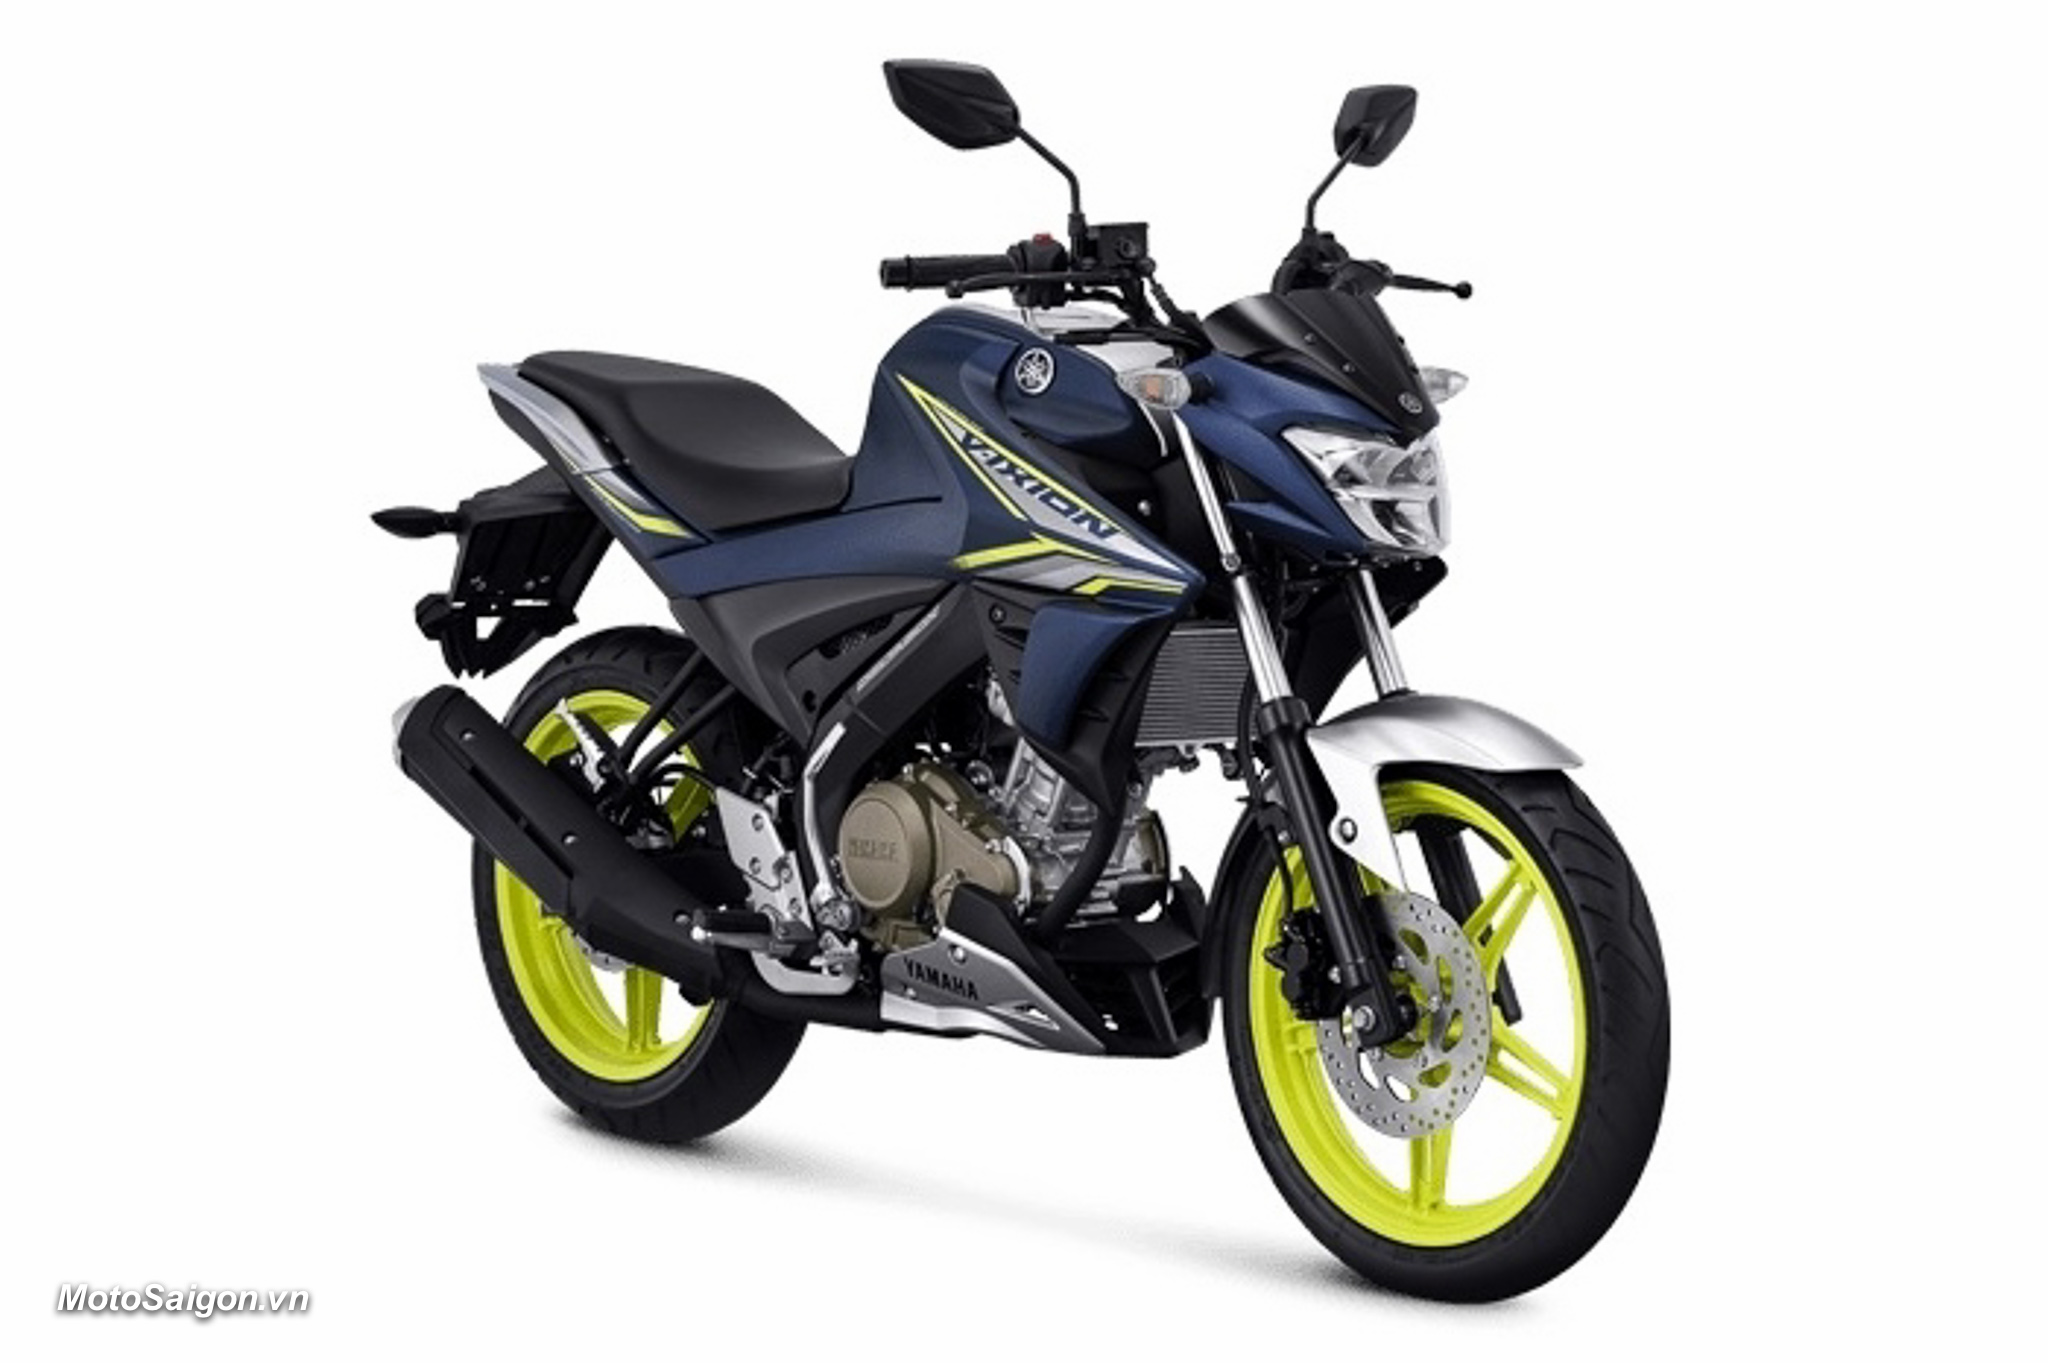 Yamaha FZ150i 2022 (Vixion) ra mắt phiên bản màu mới kèm giá bán